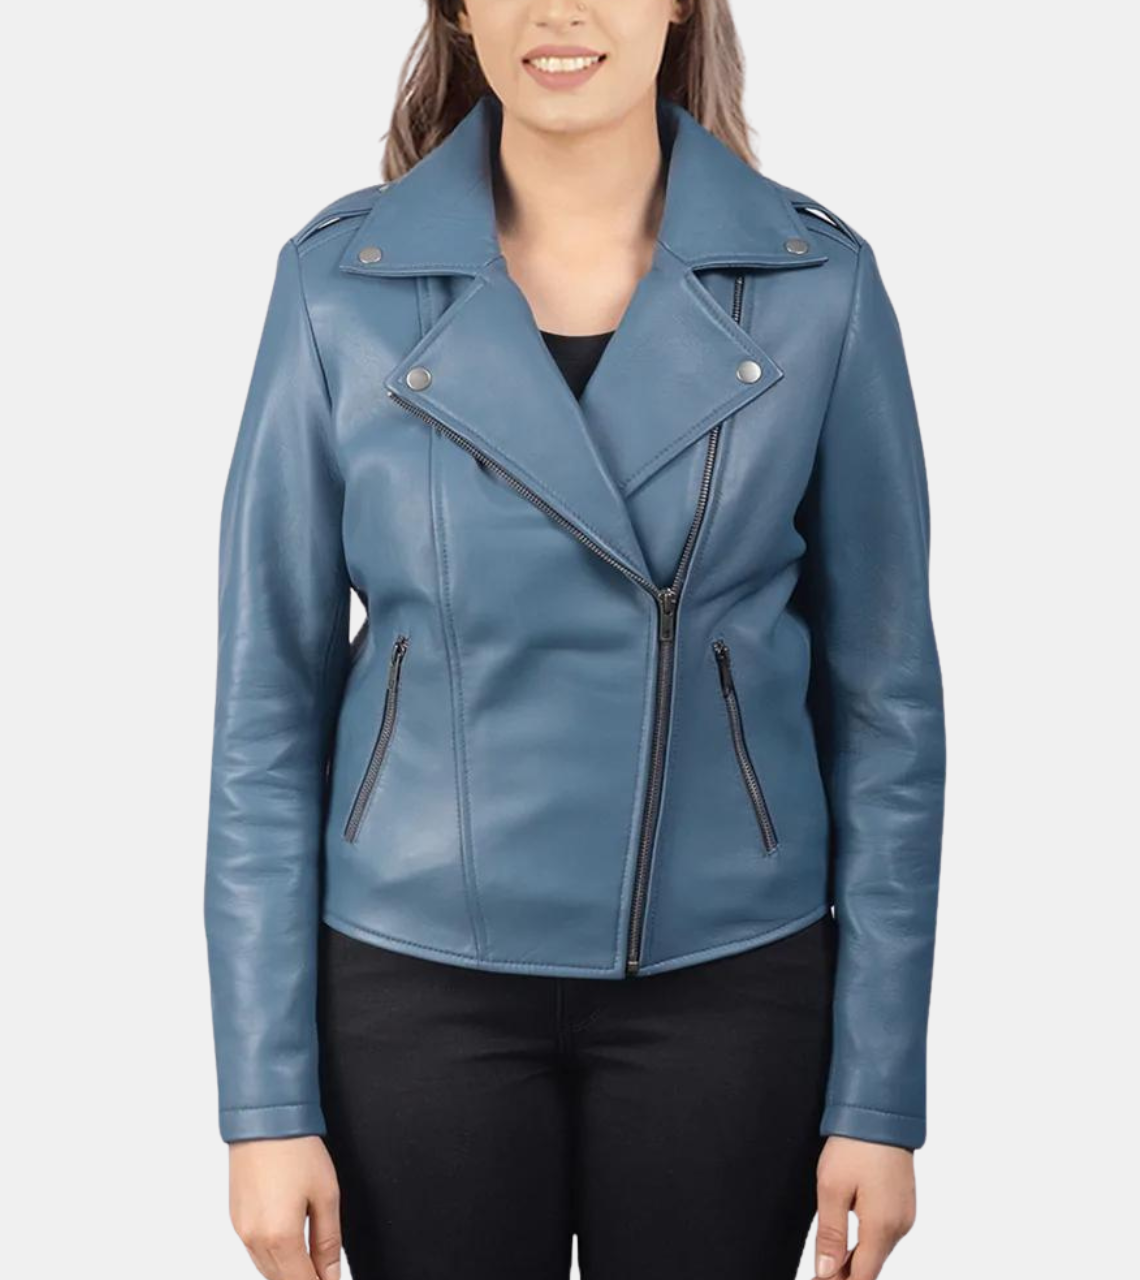 Women's Blue Biker's Leather Jacket